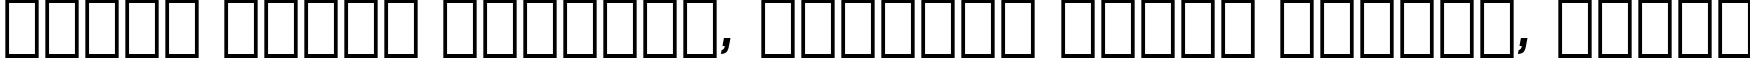 Пример написания шрифтом Avant Garde Medium Oblique BT текста на белорусском